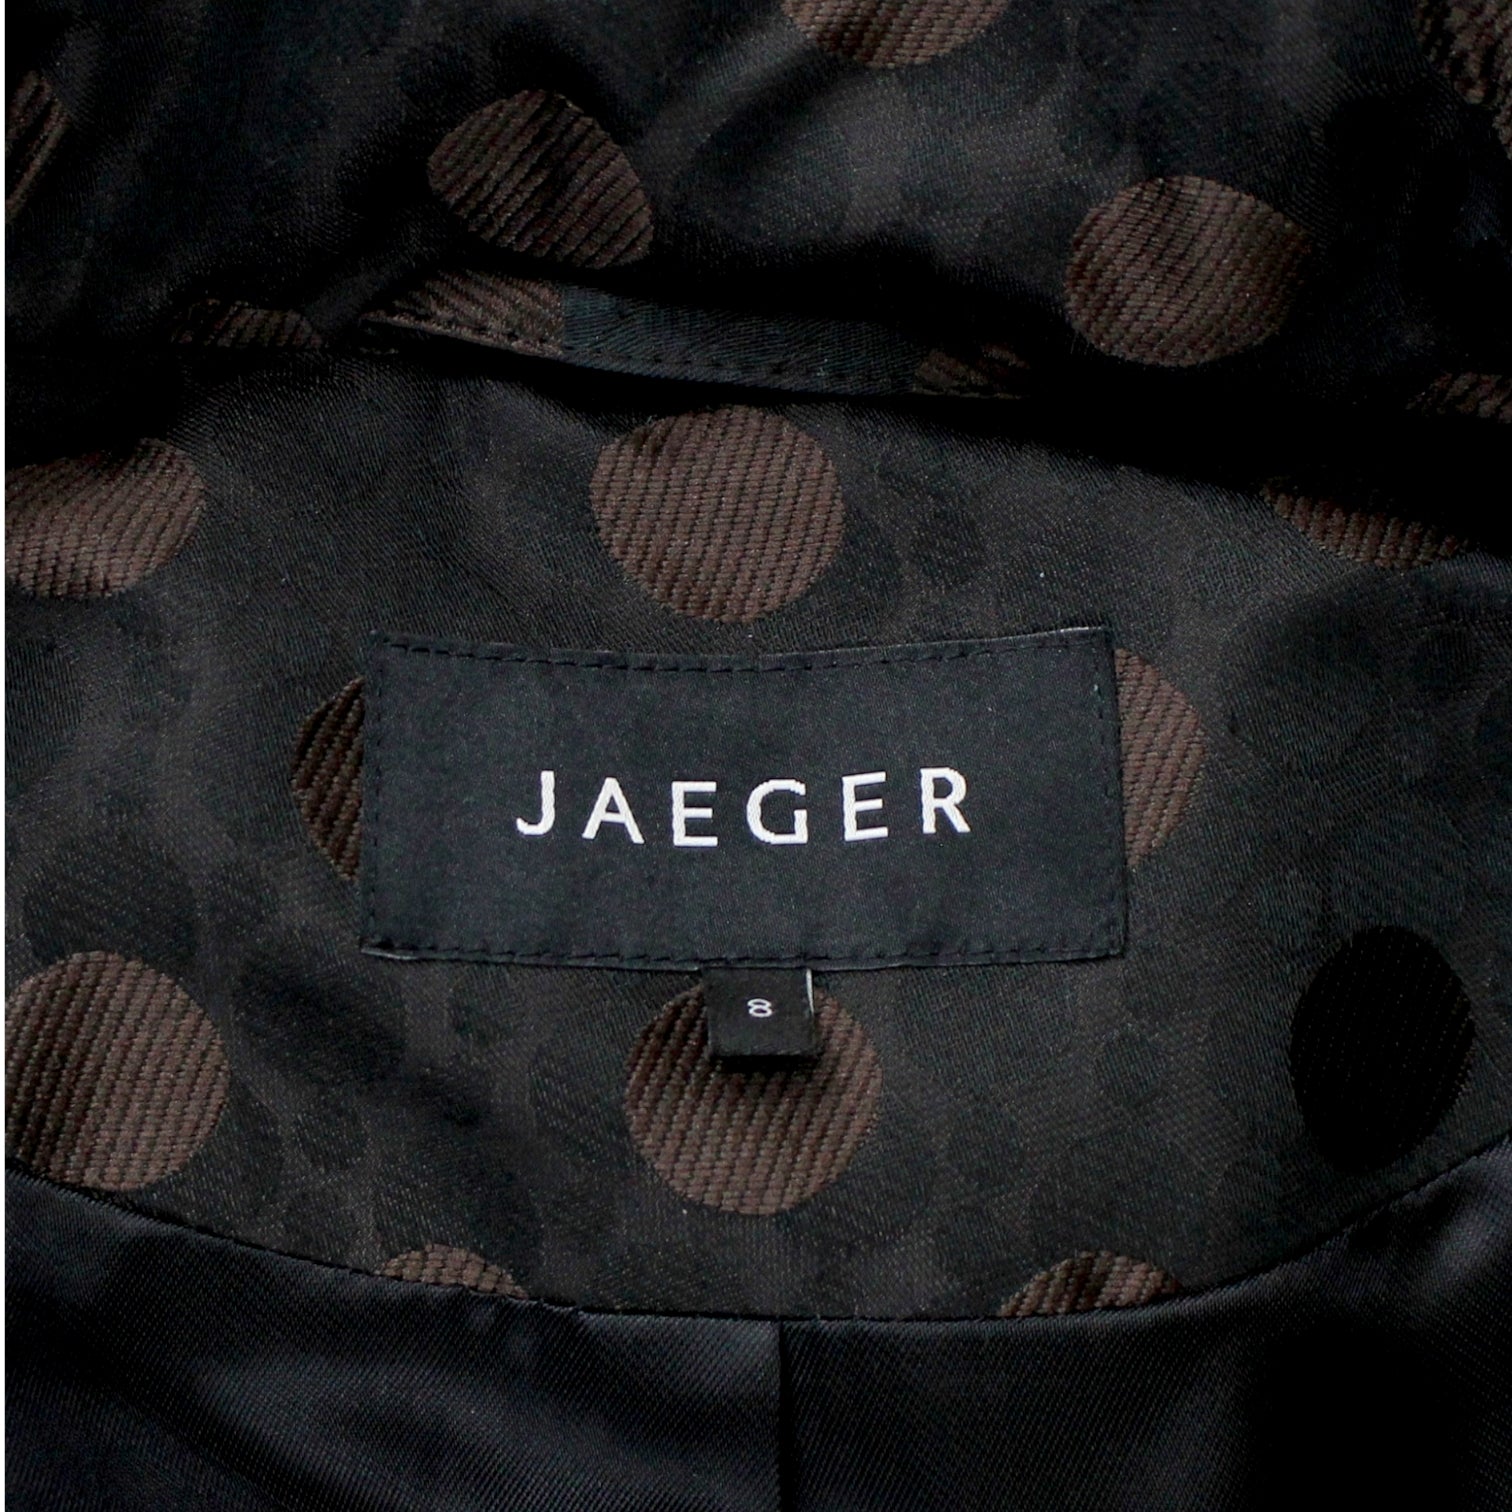 Jaeger Brown Jacquard Spot Coat